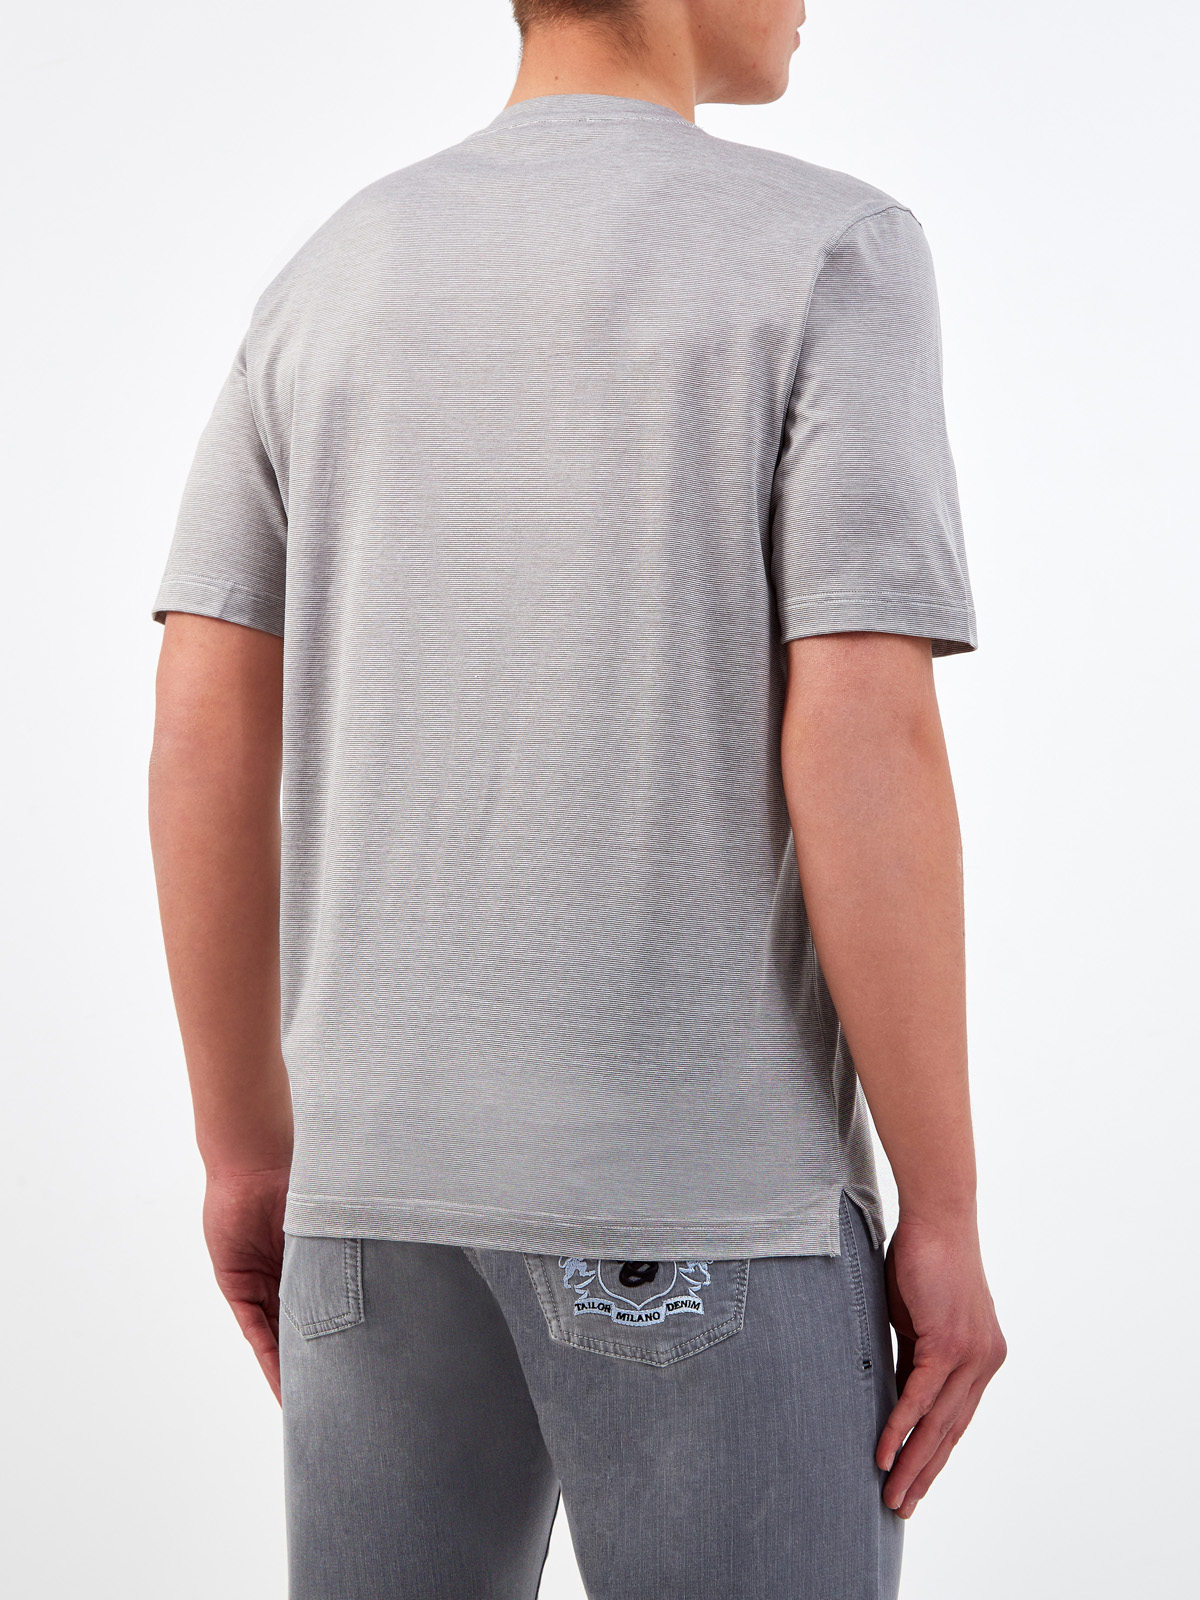 Хлопковая футболка с микро-принтом в тонкую полоску GRAN SASSO, цвет серый, размер 48;52;54;56;50 - фото 4